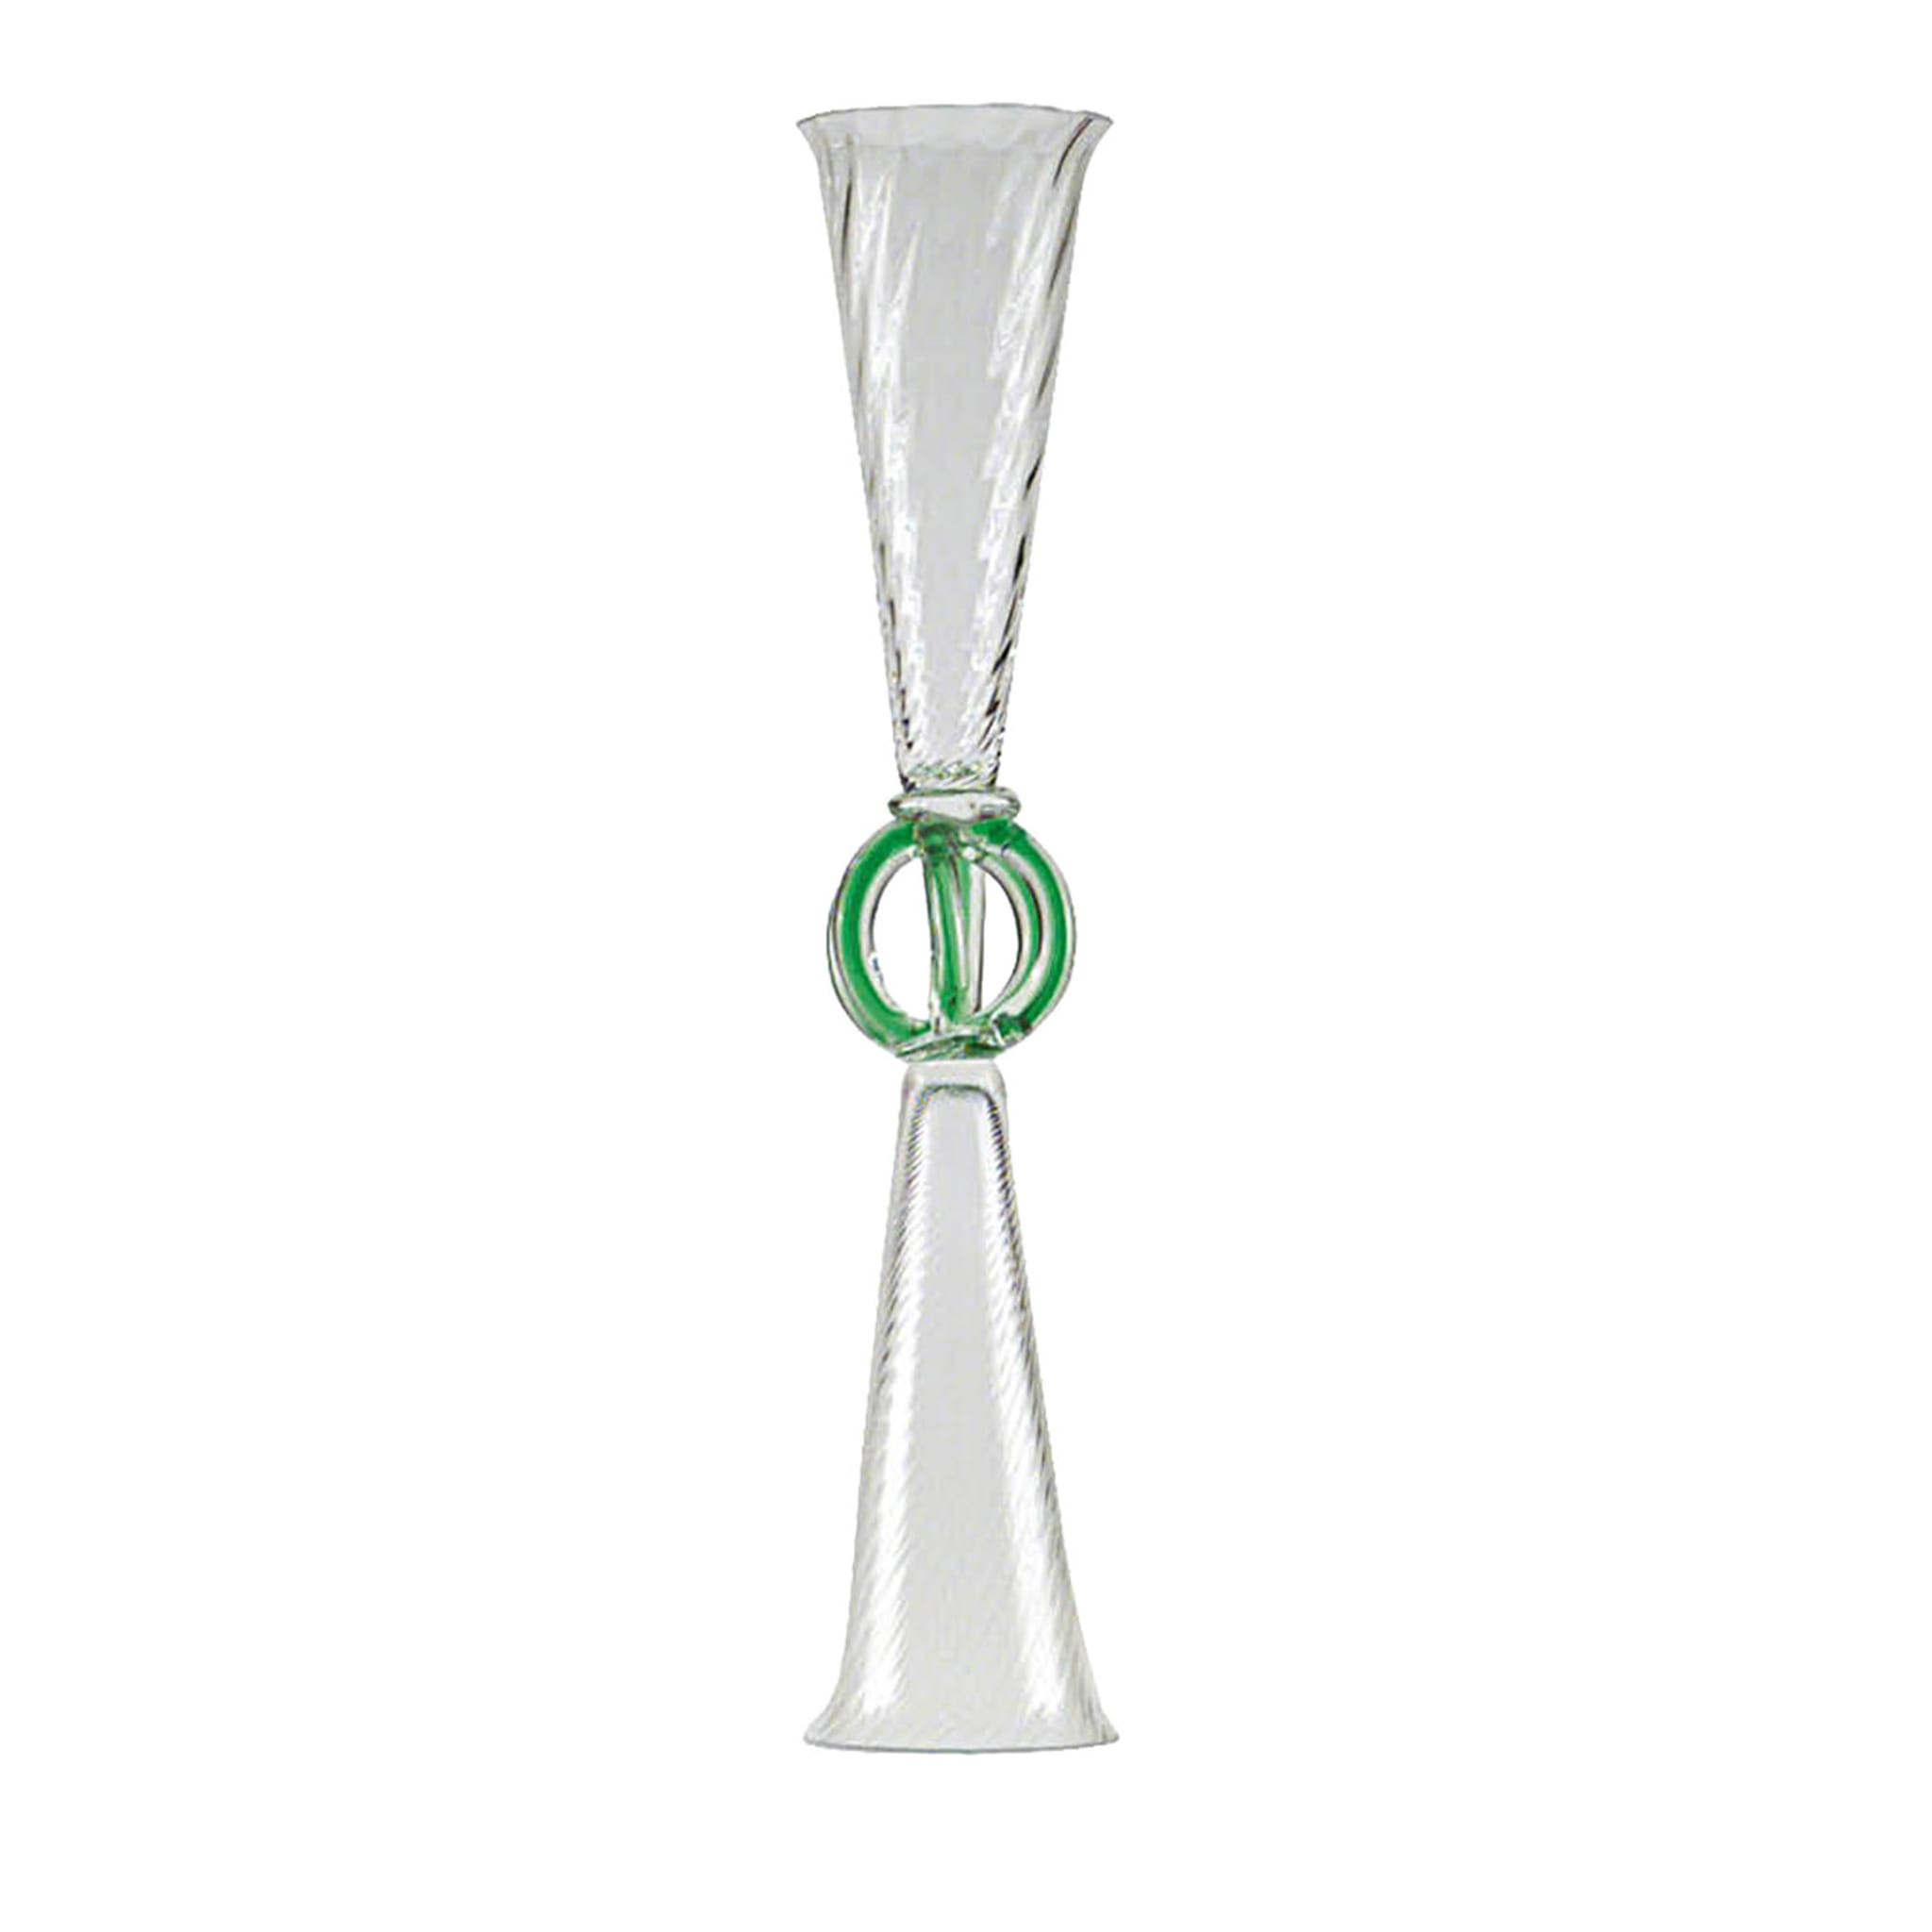 Bossuet Transparent & Green Glass by Borek Sipek - Main view